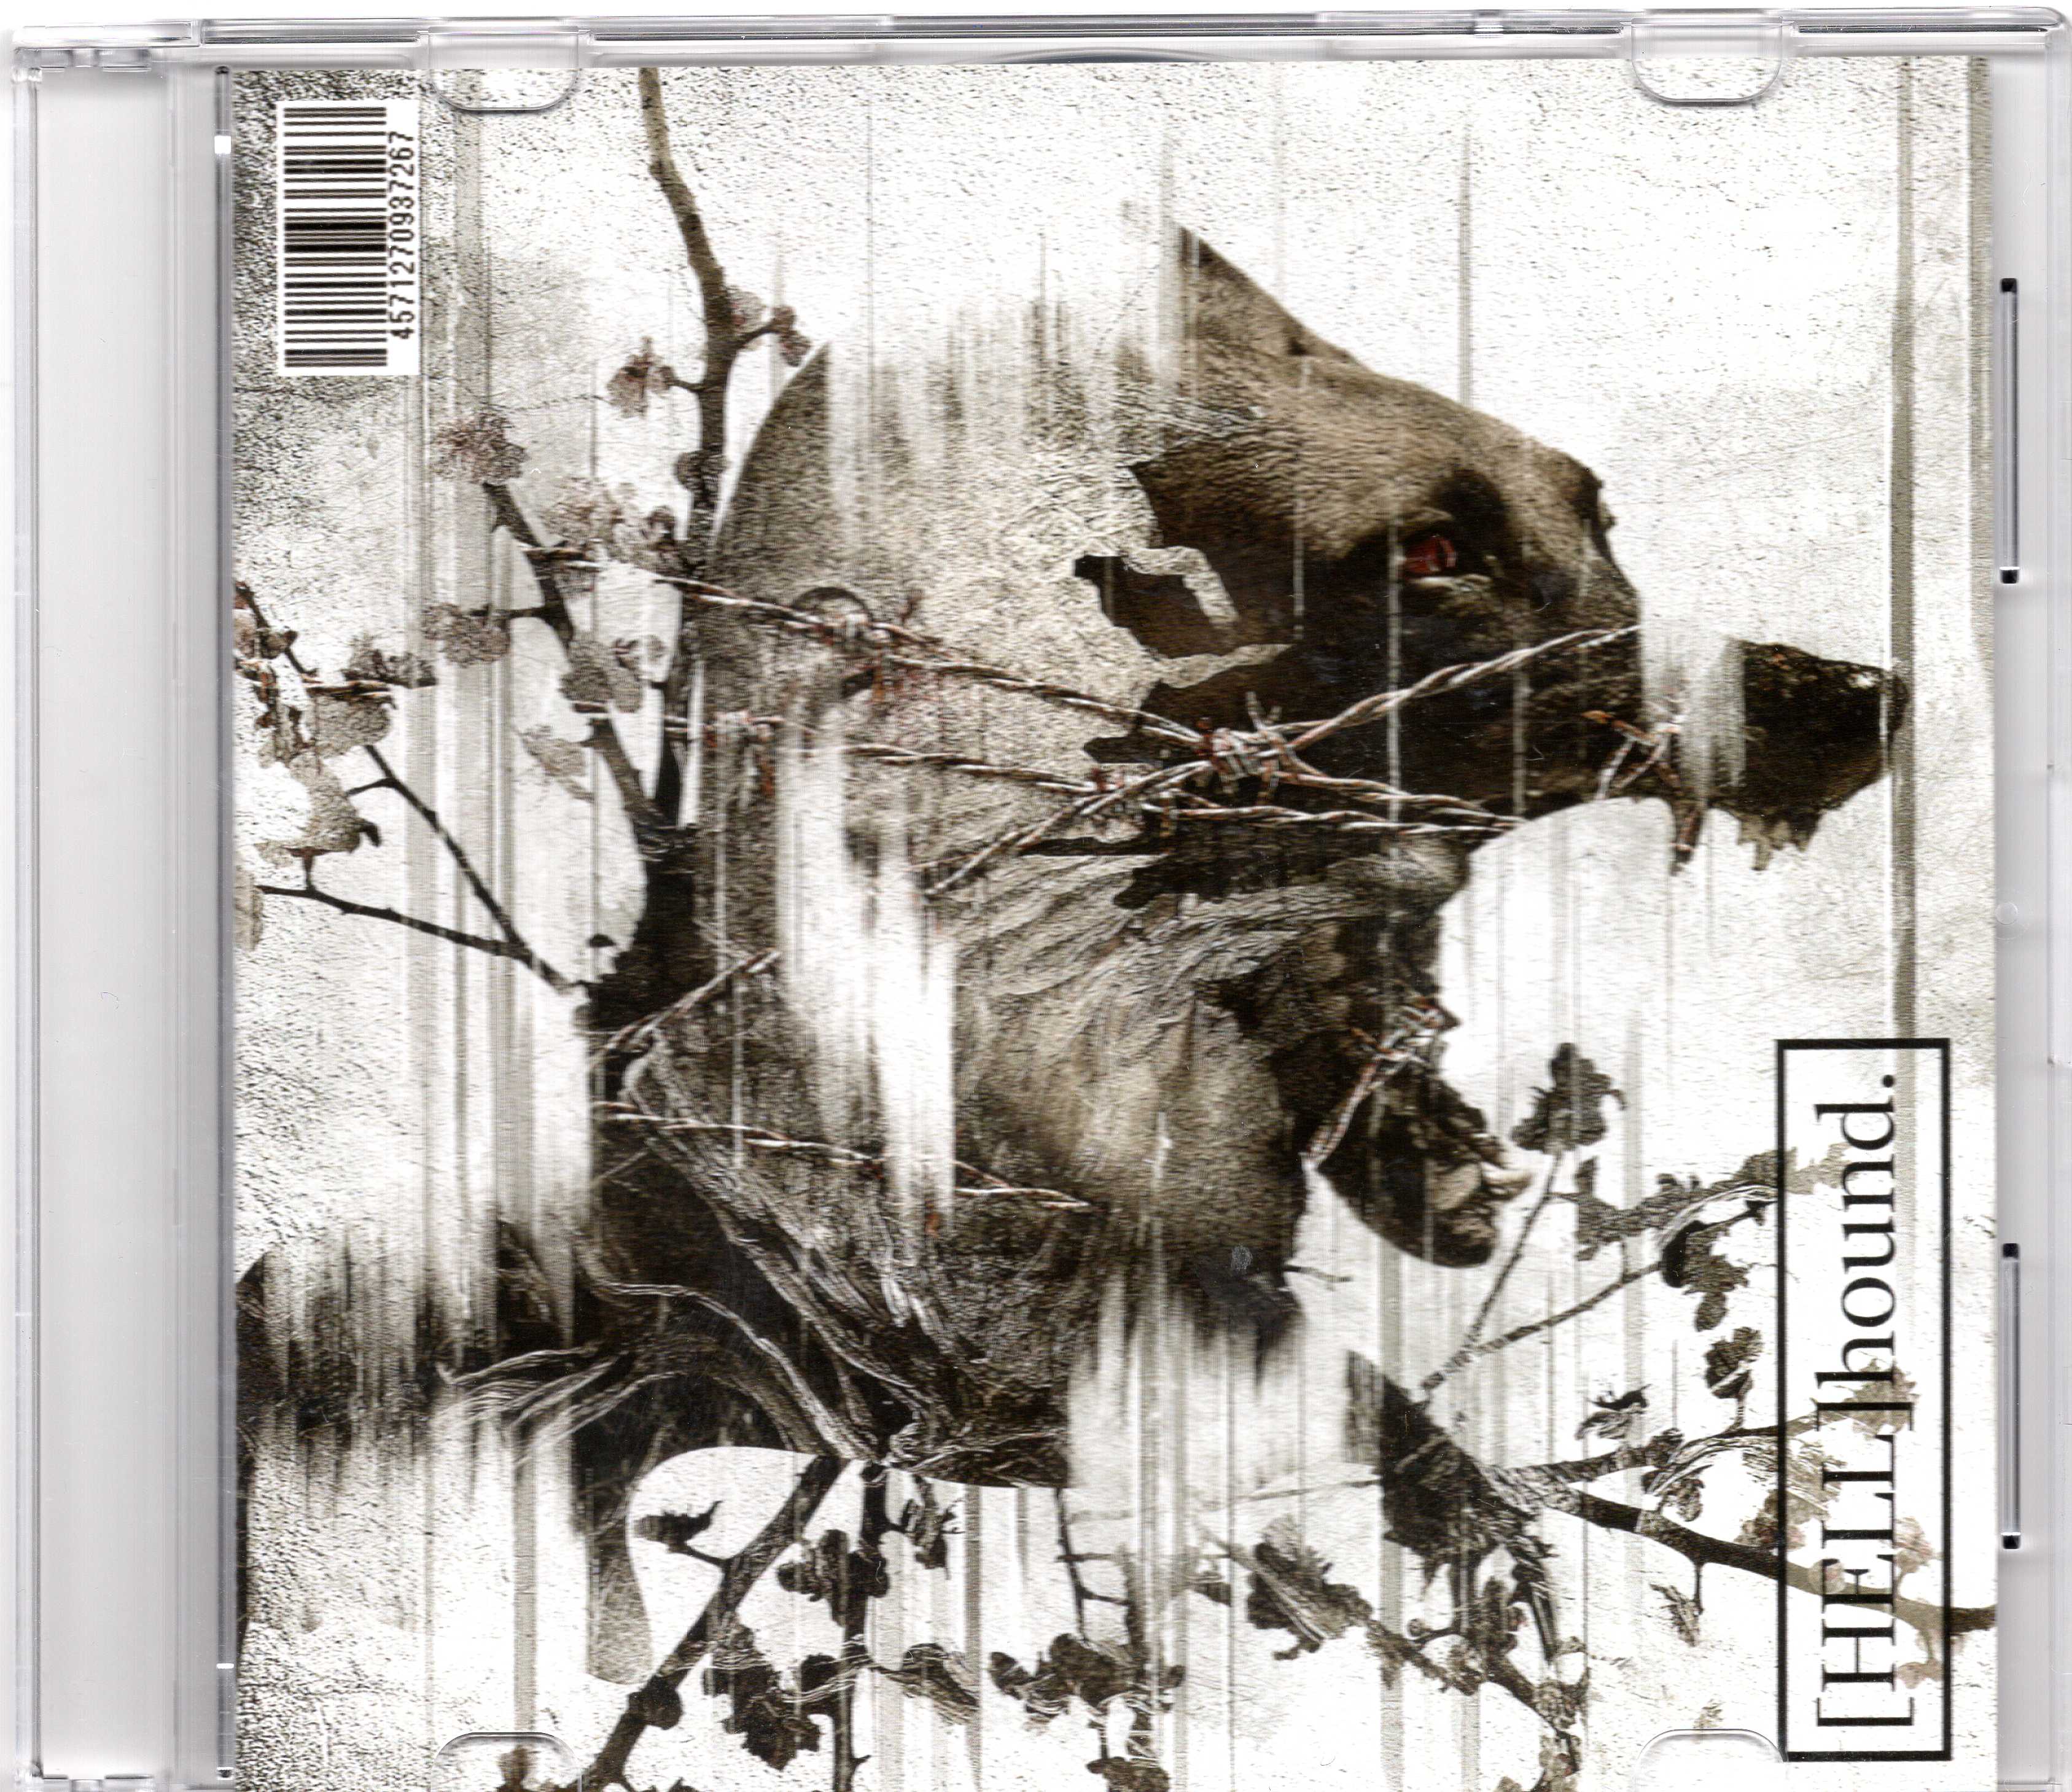 TRNTY D:CODE ( トリニティデコード )  の CD 【通常盤】[HELL]hound.